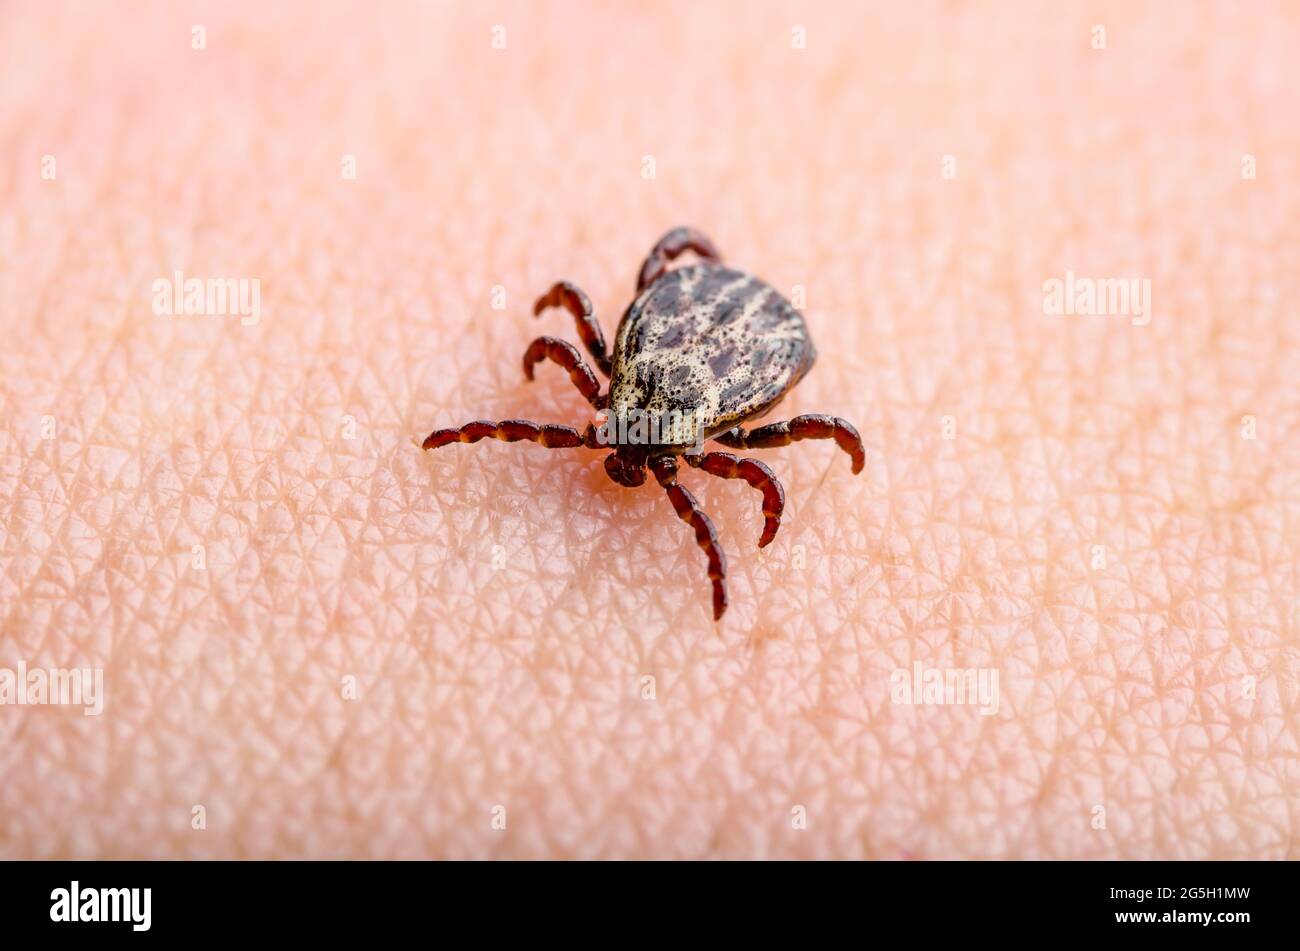 Lyme-Borreliose infizierte Tick Mite Insekt kriechen auf der Haut. Enzephalitis Virus oder Lyme-Borreliose Infektiöse Dermacentor Tick Arachnid Parasiten Close-Up Stockfoto